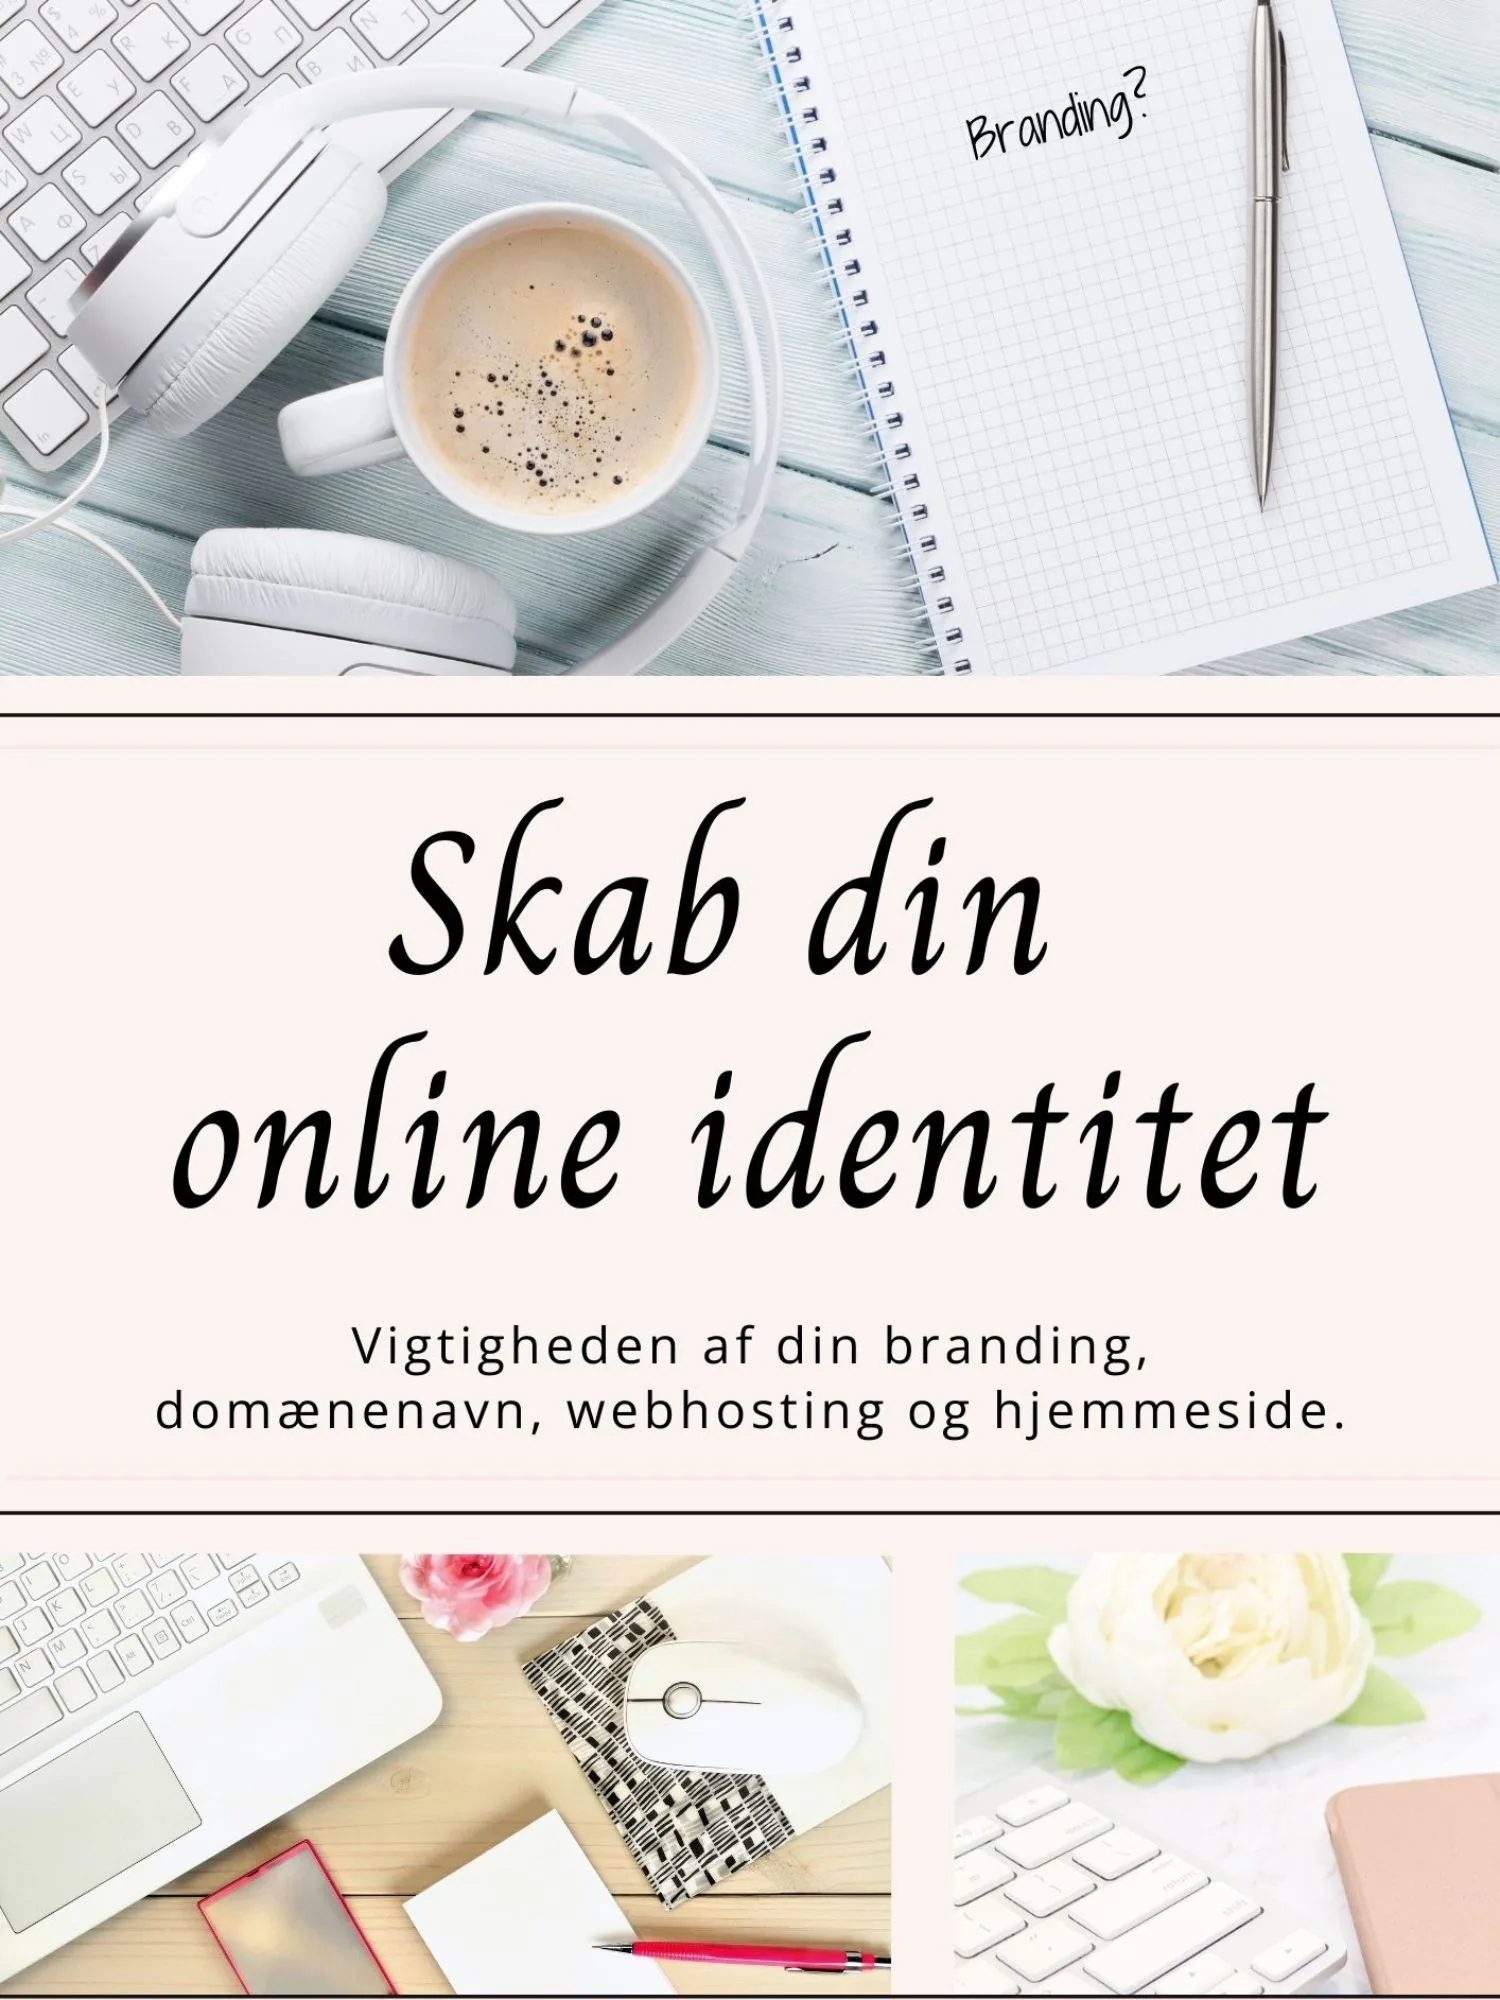 Online branding